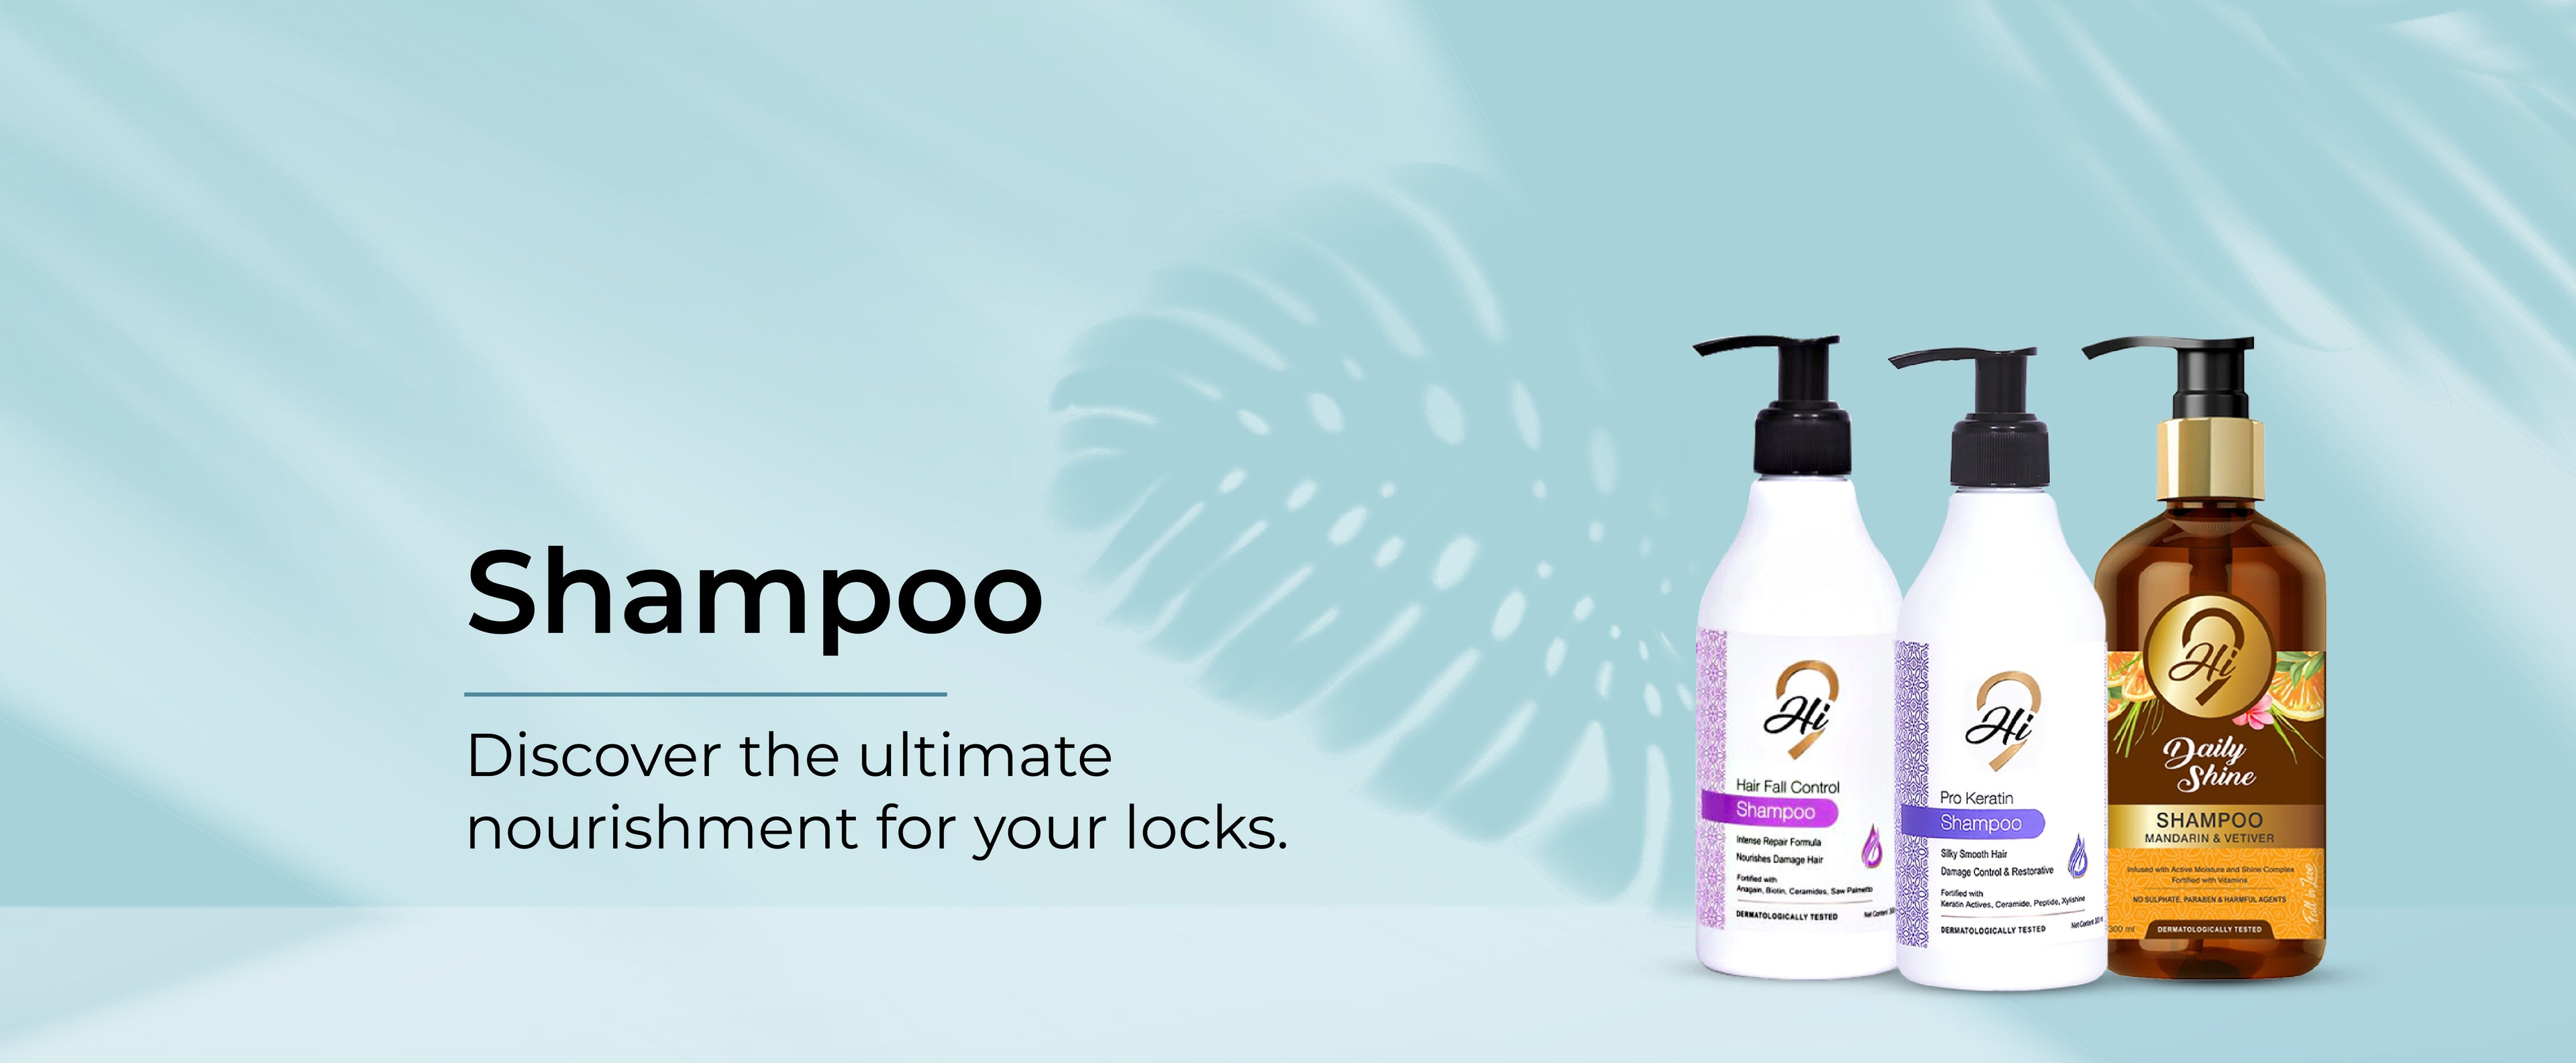 Hi9 Shampoo products range